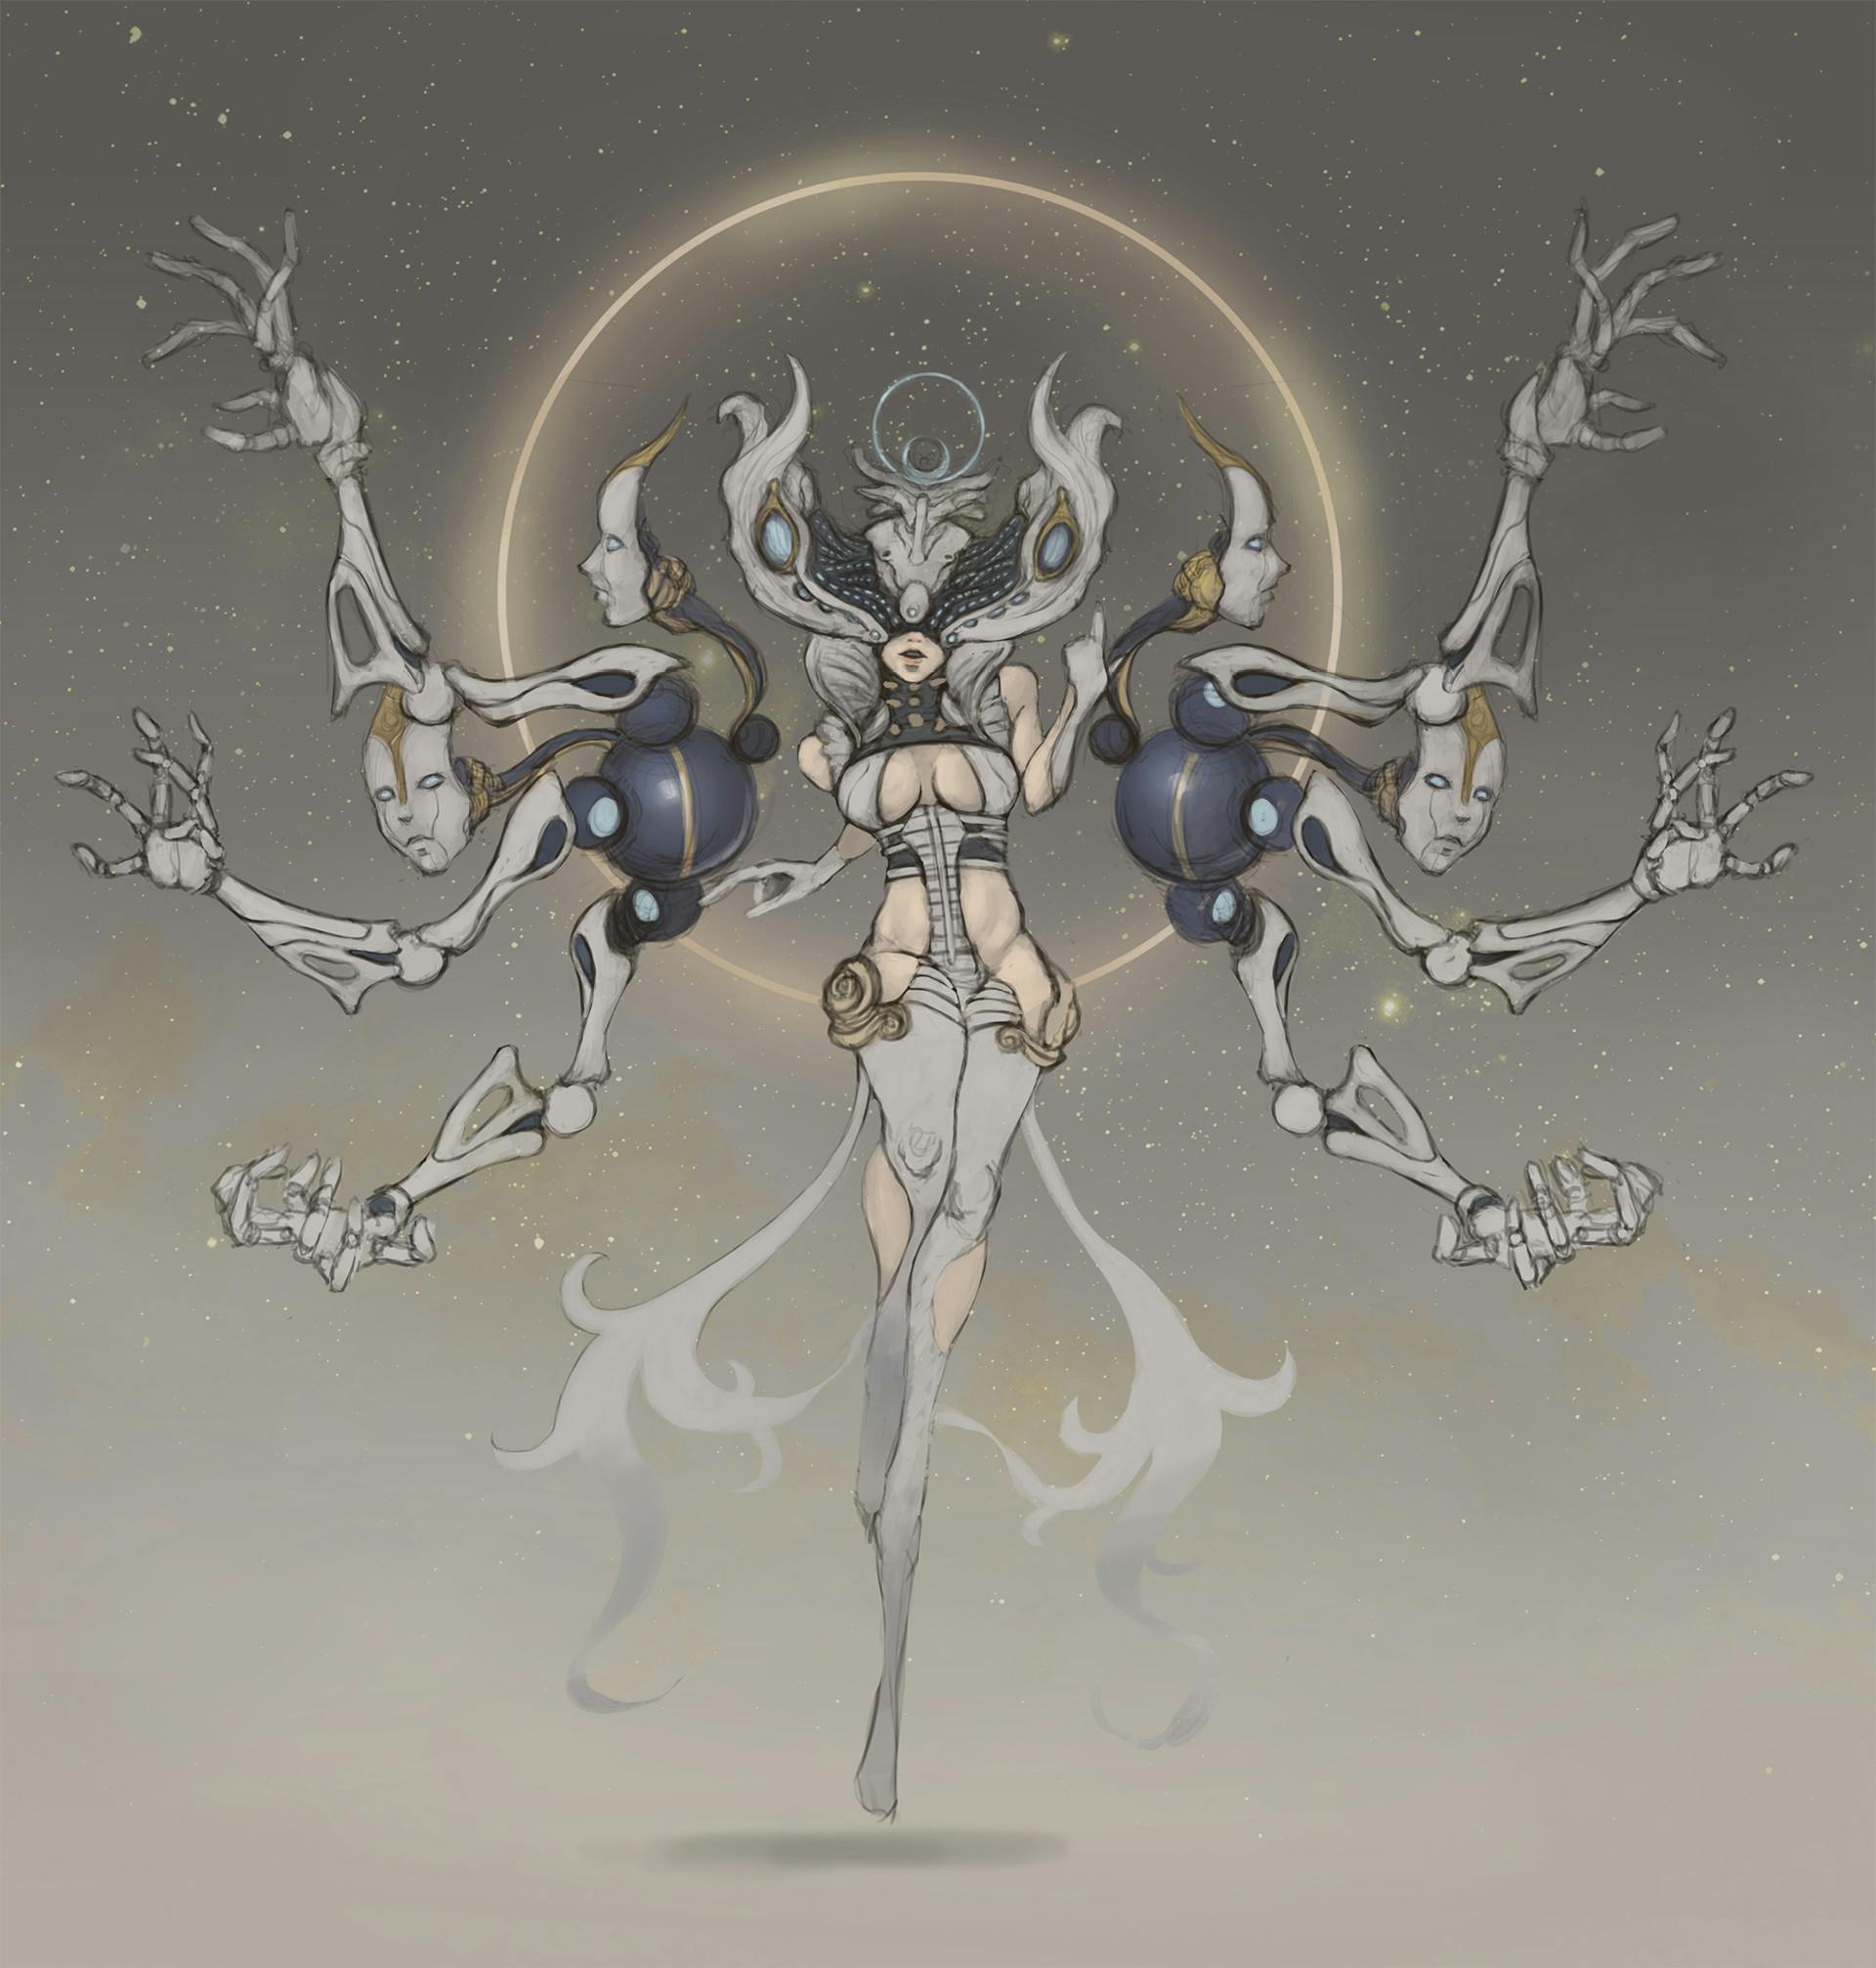 A multi-armed priestess